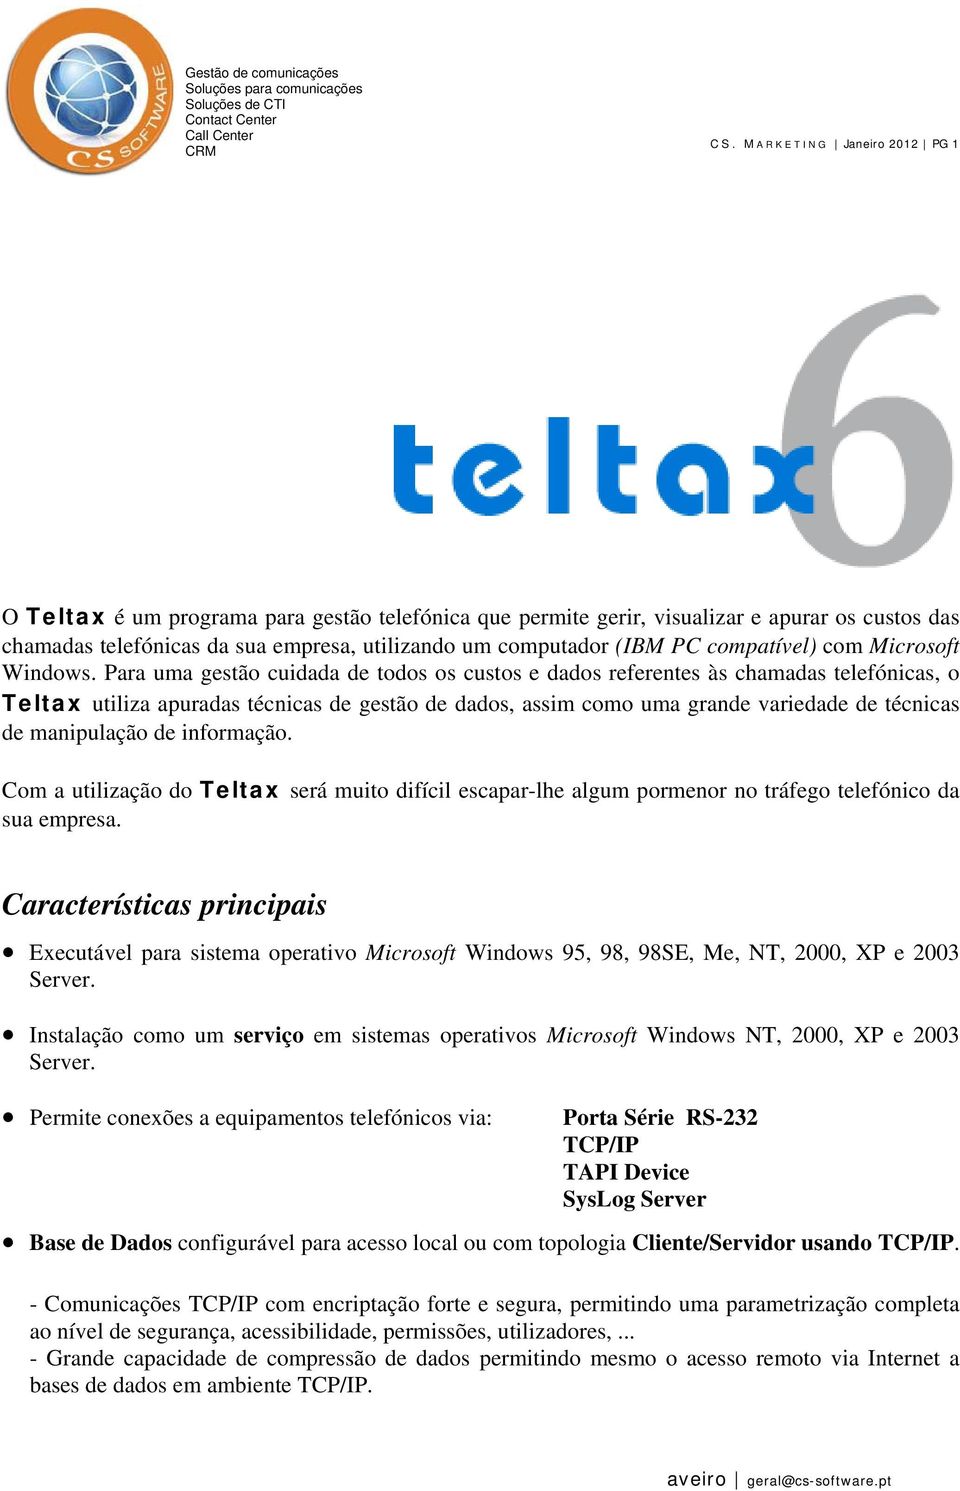 Para uma gestão cuidada de todos os custos e dados referentes às chamadas telefónicas, o Teltax utiliza apuradas técnicas de gestão de dados, assim como uma grande variedade de técnicas de